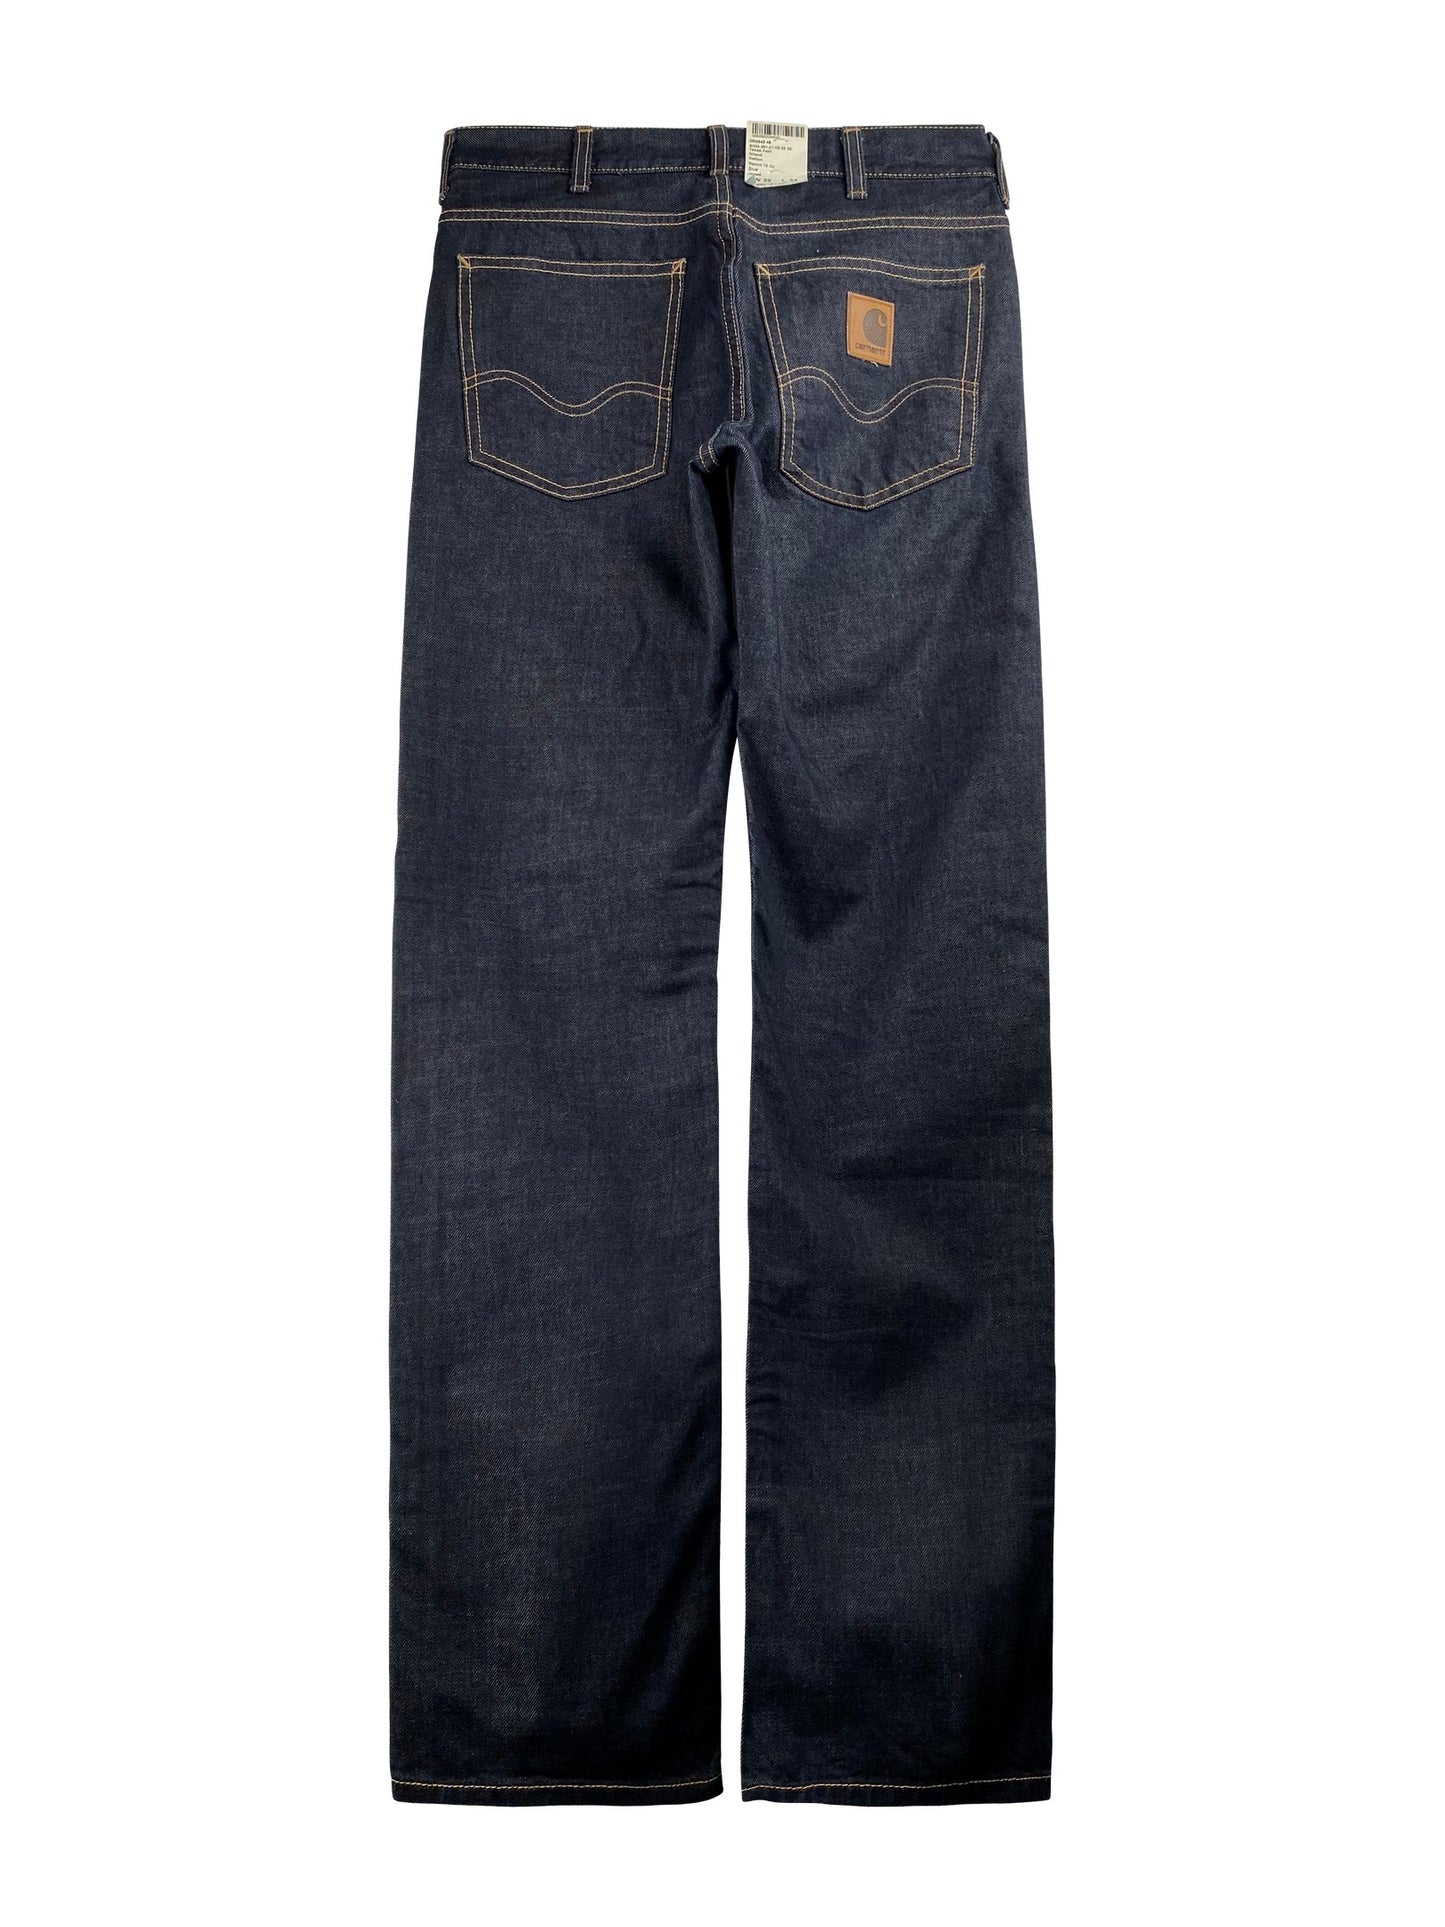 Carhartt Jeans “Texas Pant Landers” -blue rinsed